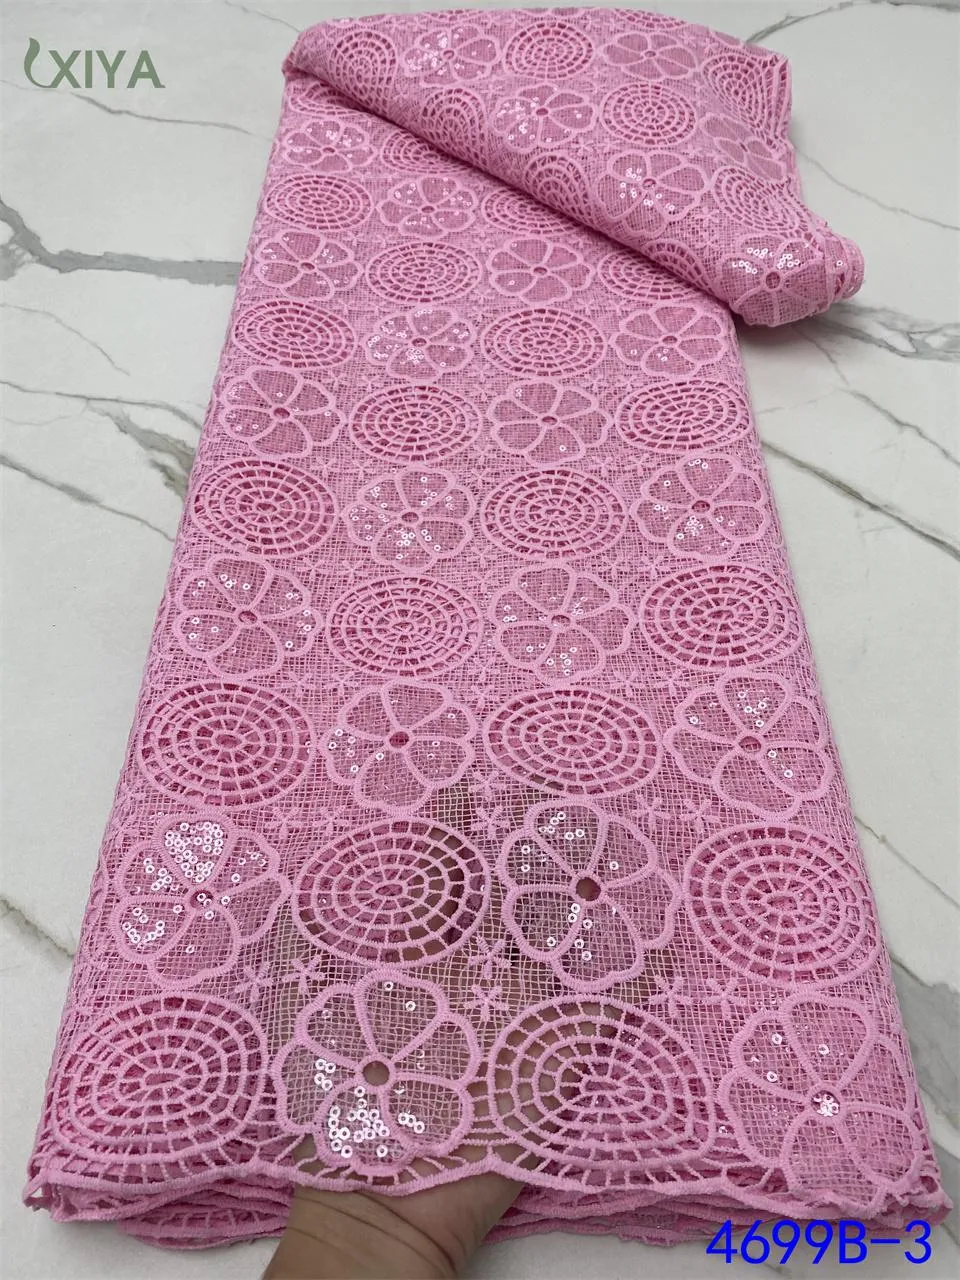 Tissu Bébé rose lait soie dentelle tissu dernier tissu africain dentelle avec paillettes nigérian dentelle tissus pour la couture de fête de mariage APW4699B